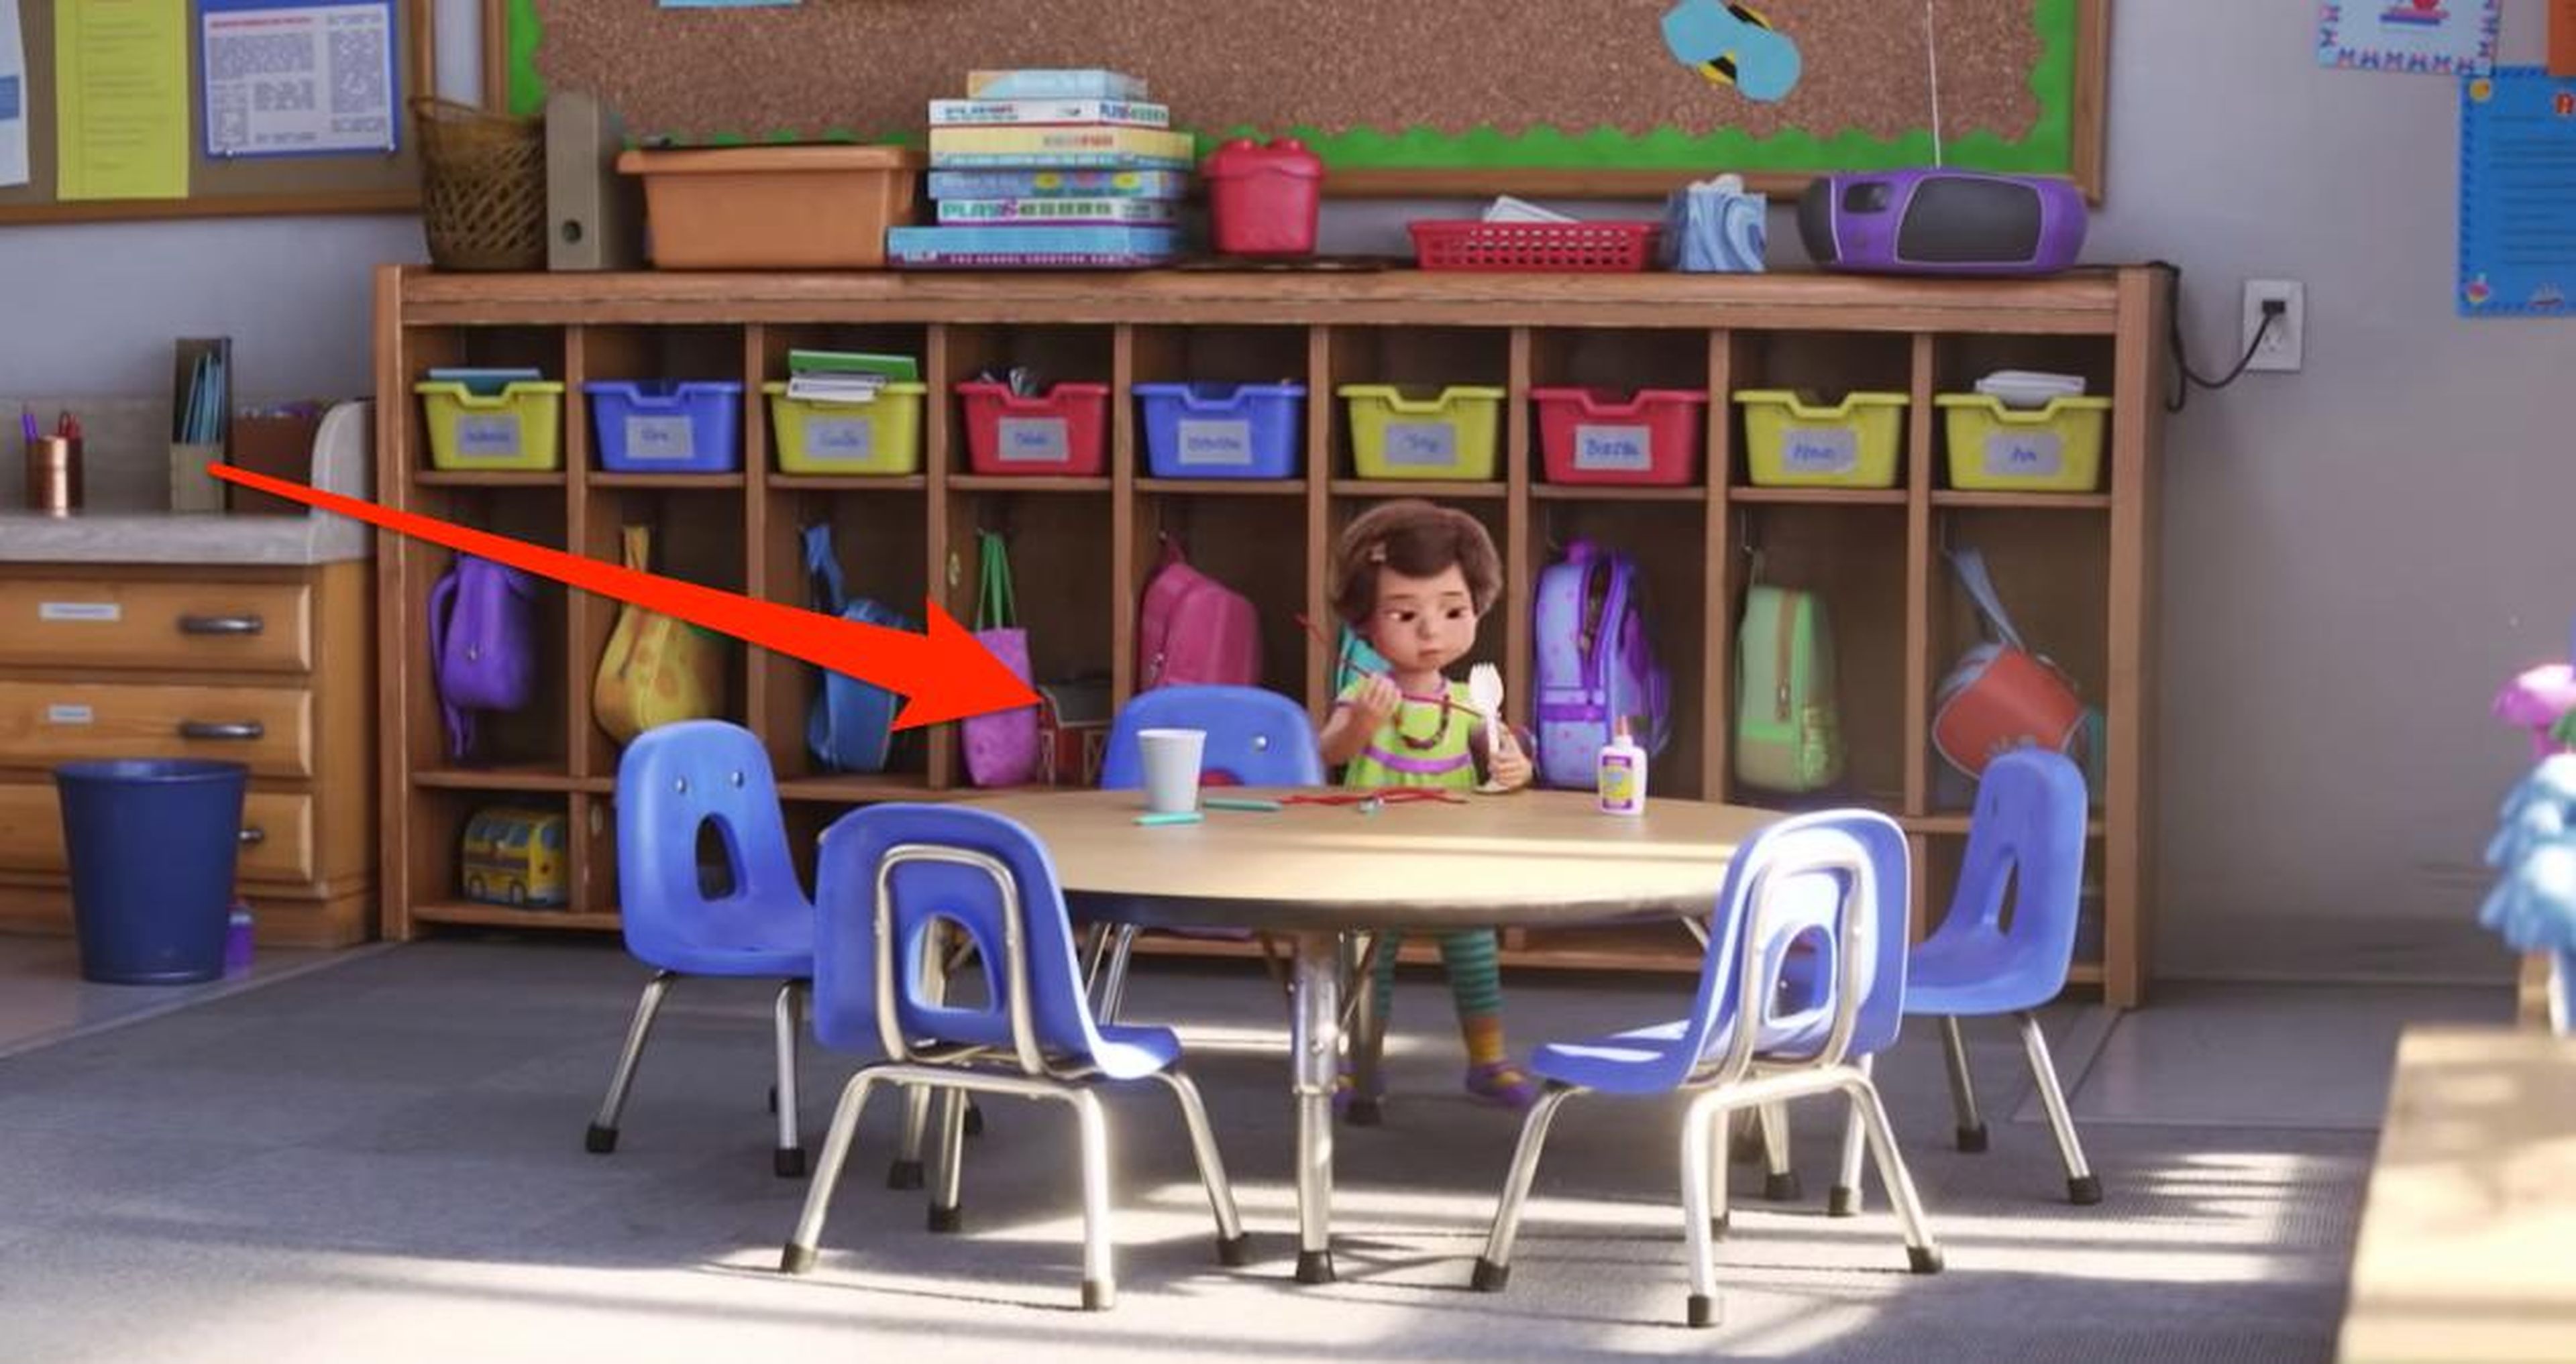 Cuando Bonnie está haciendo el Forky, puedes verlo en el fondo en un cubículo detrás de ella.